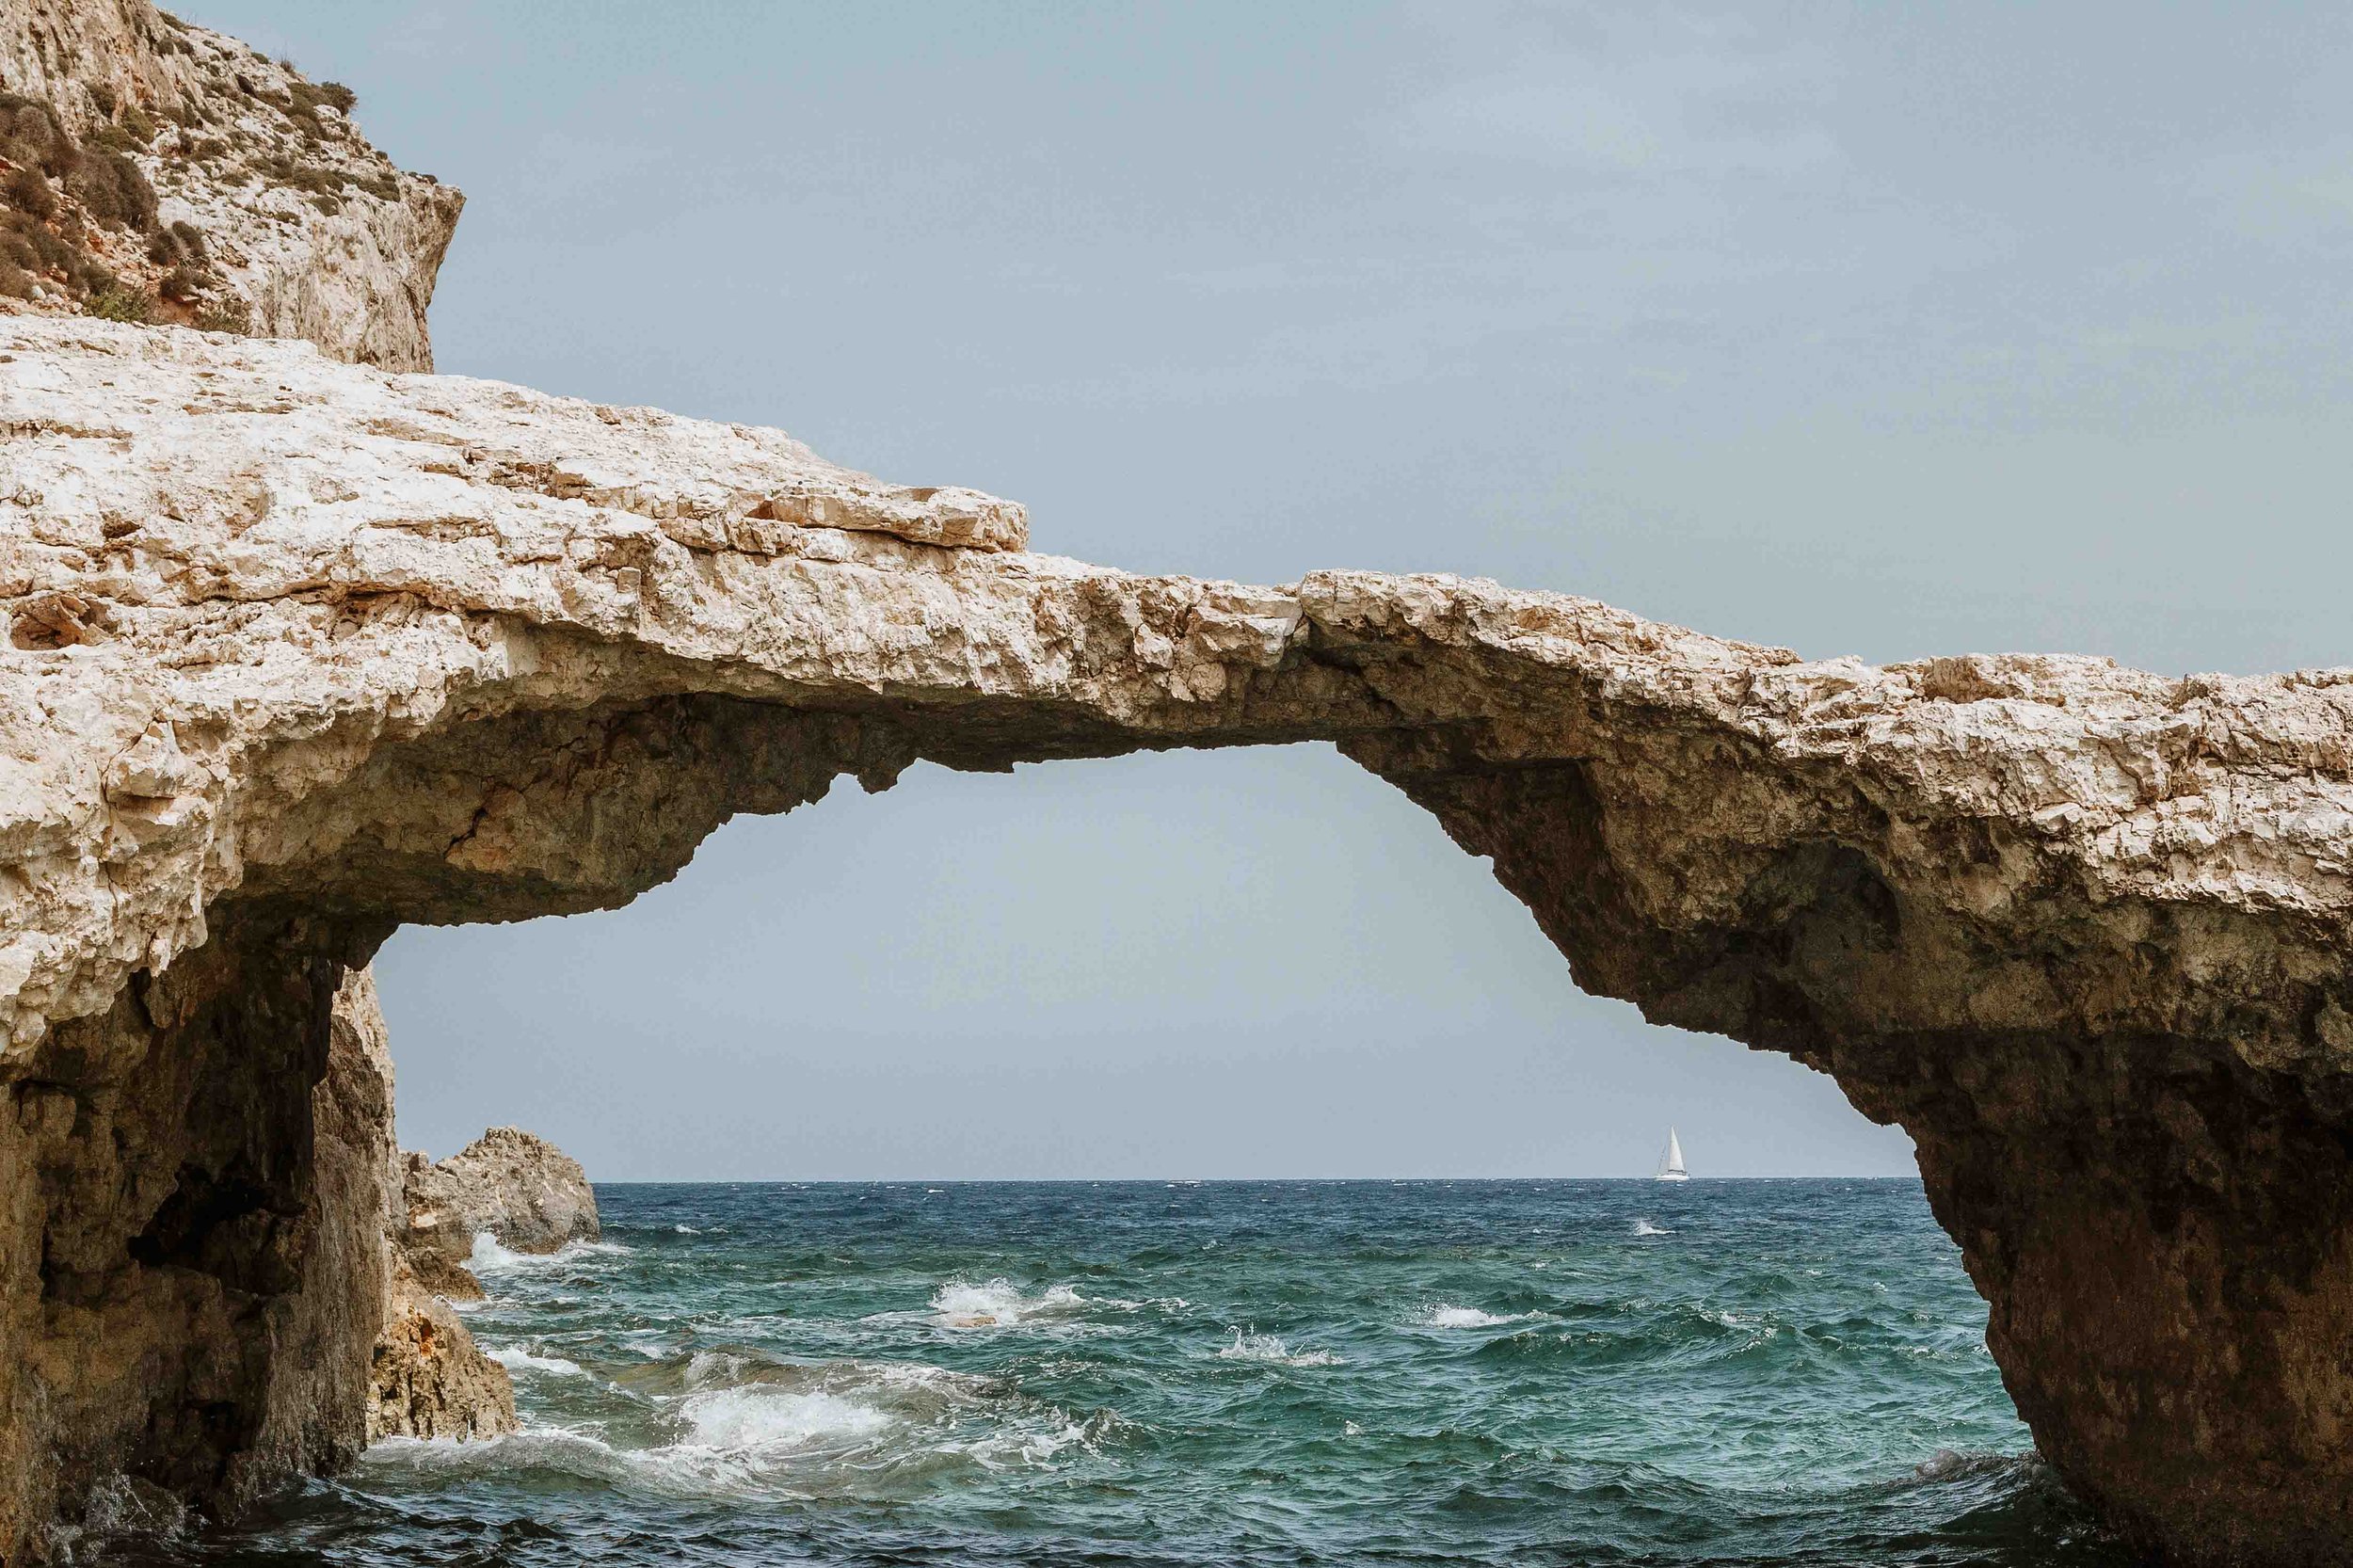 Sea arches in Malta in winter near Comino